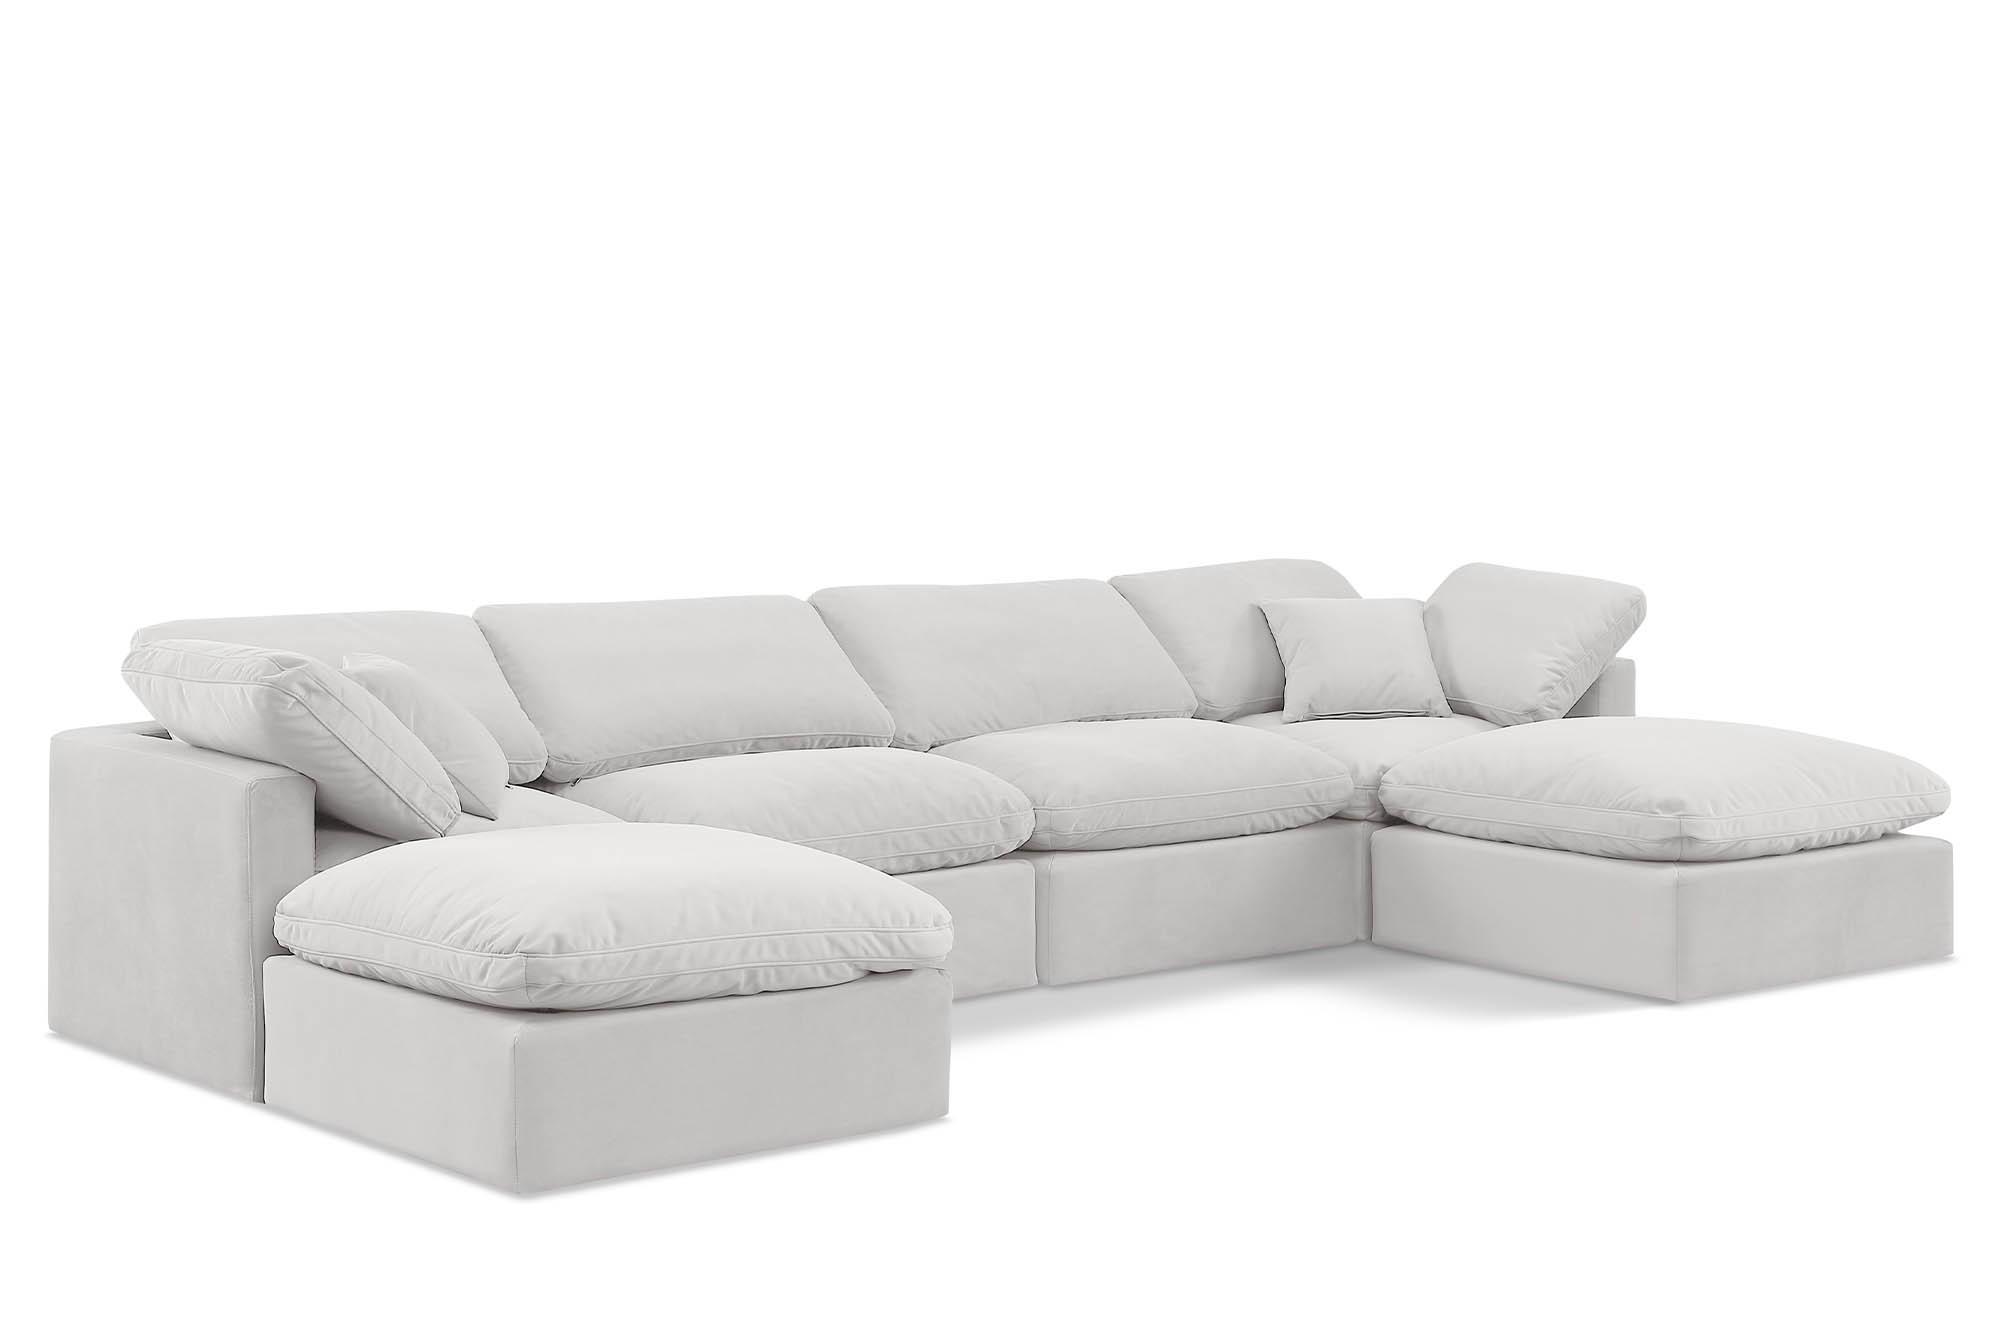 Contemporary, Modern Modular Sectional Sofa INDULGE 147Cream-Sec6B 147Cream-Sec6B in Cream Velvet